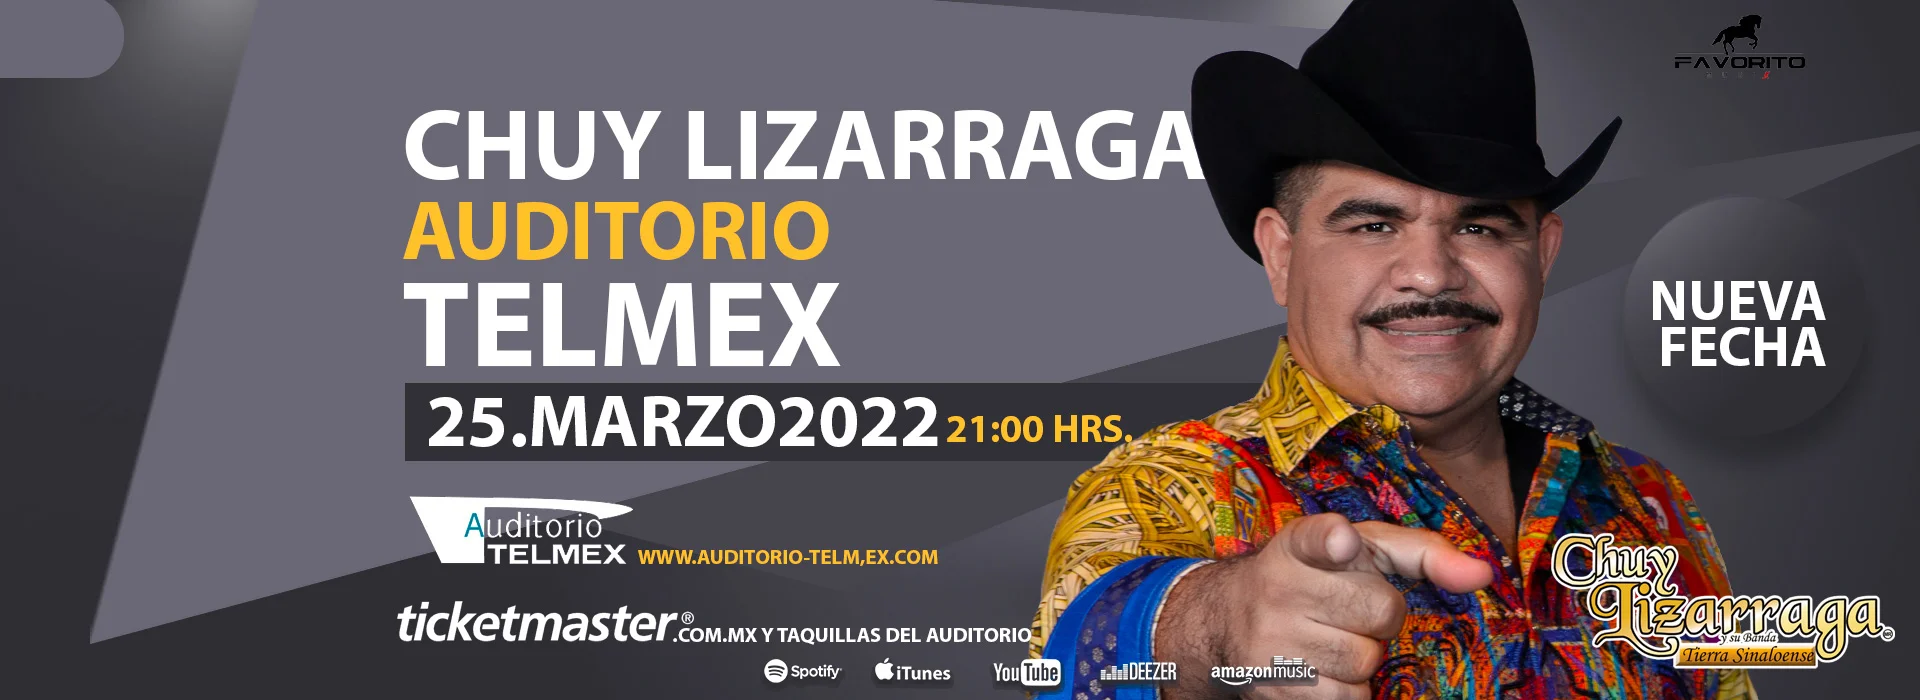 Chuy Lizarraga traerá grandes sorpresas al Auditorio Telmex